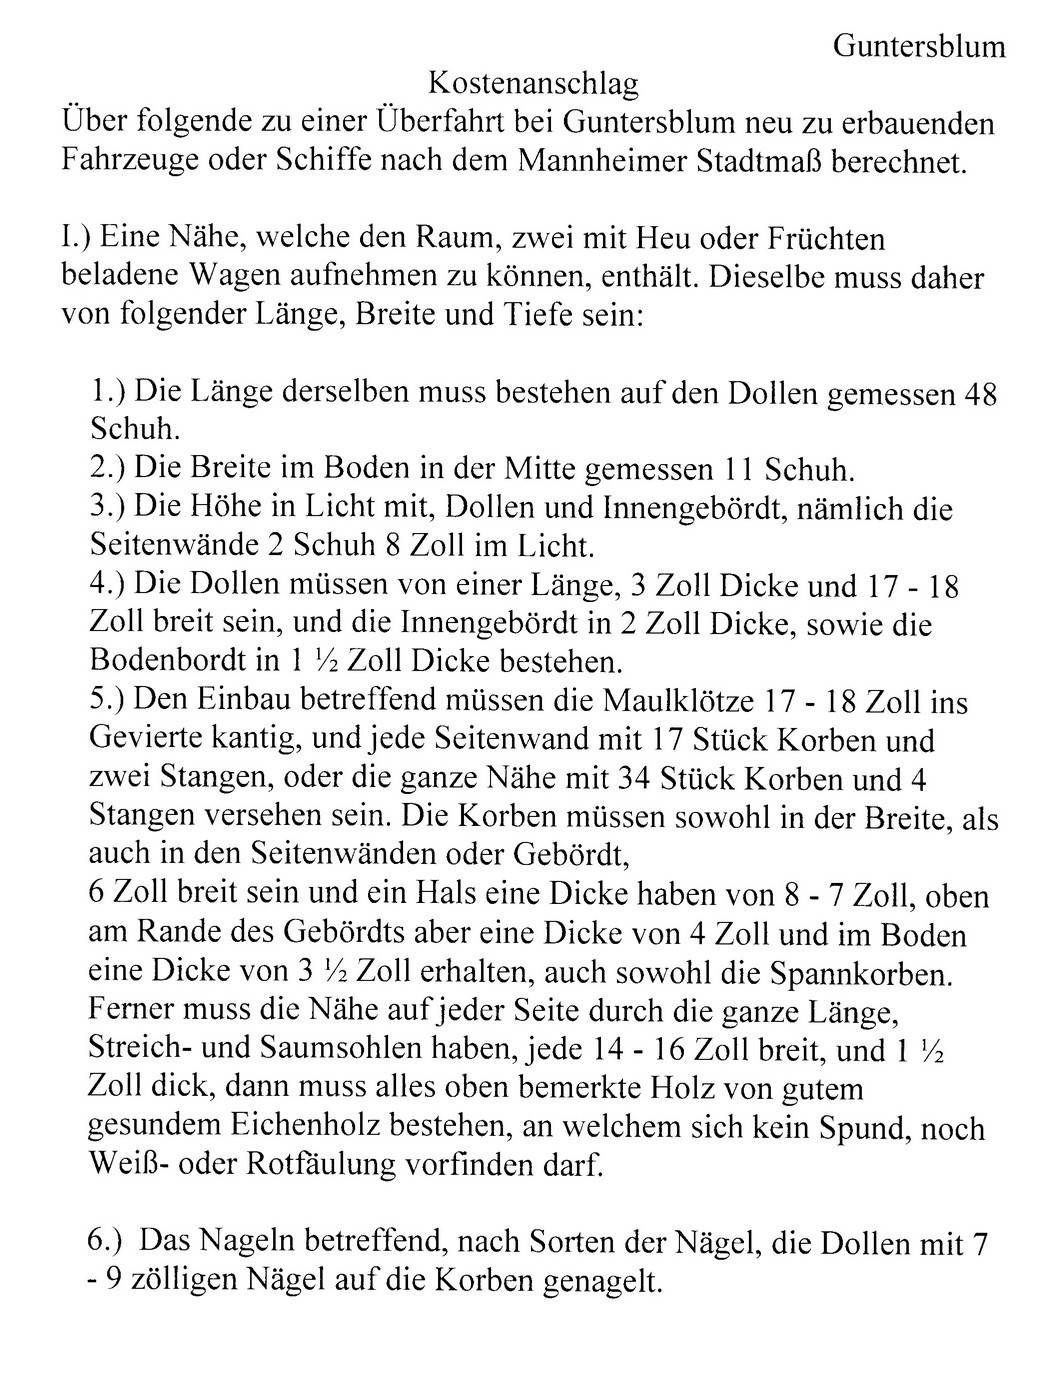 Kostenanschlag für Guntersblumer Fähre 1829 (Kulturverein Guntersblum CC BY-NC-SA)